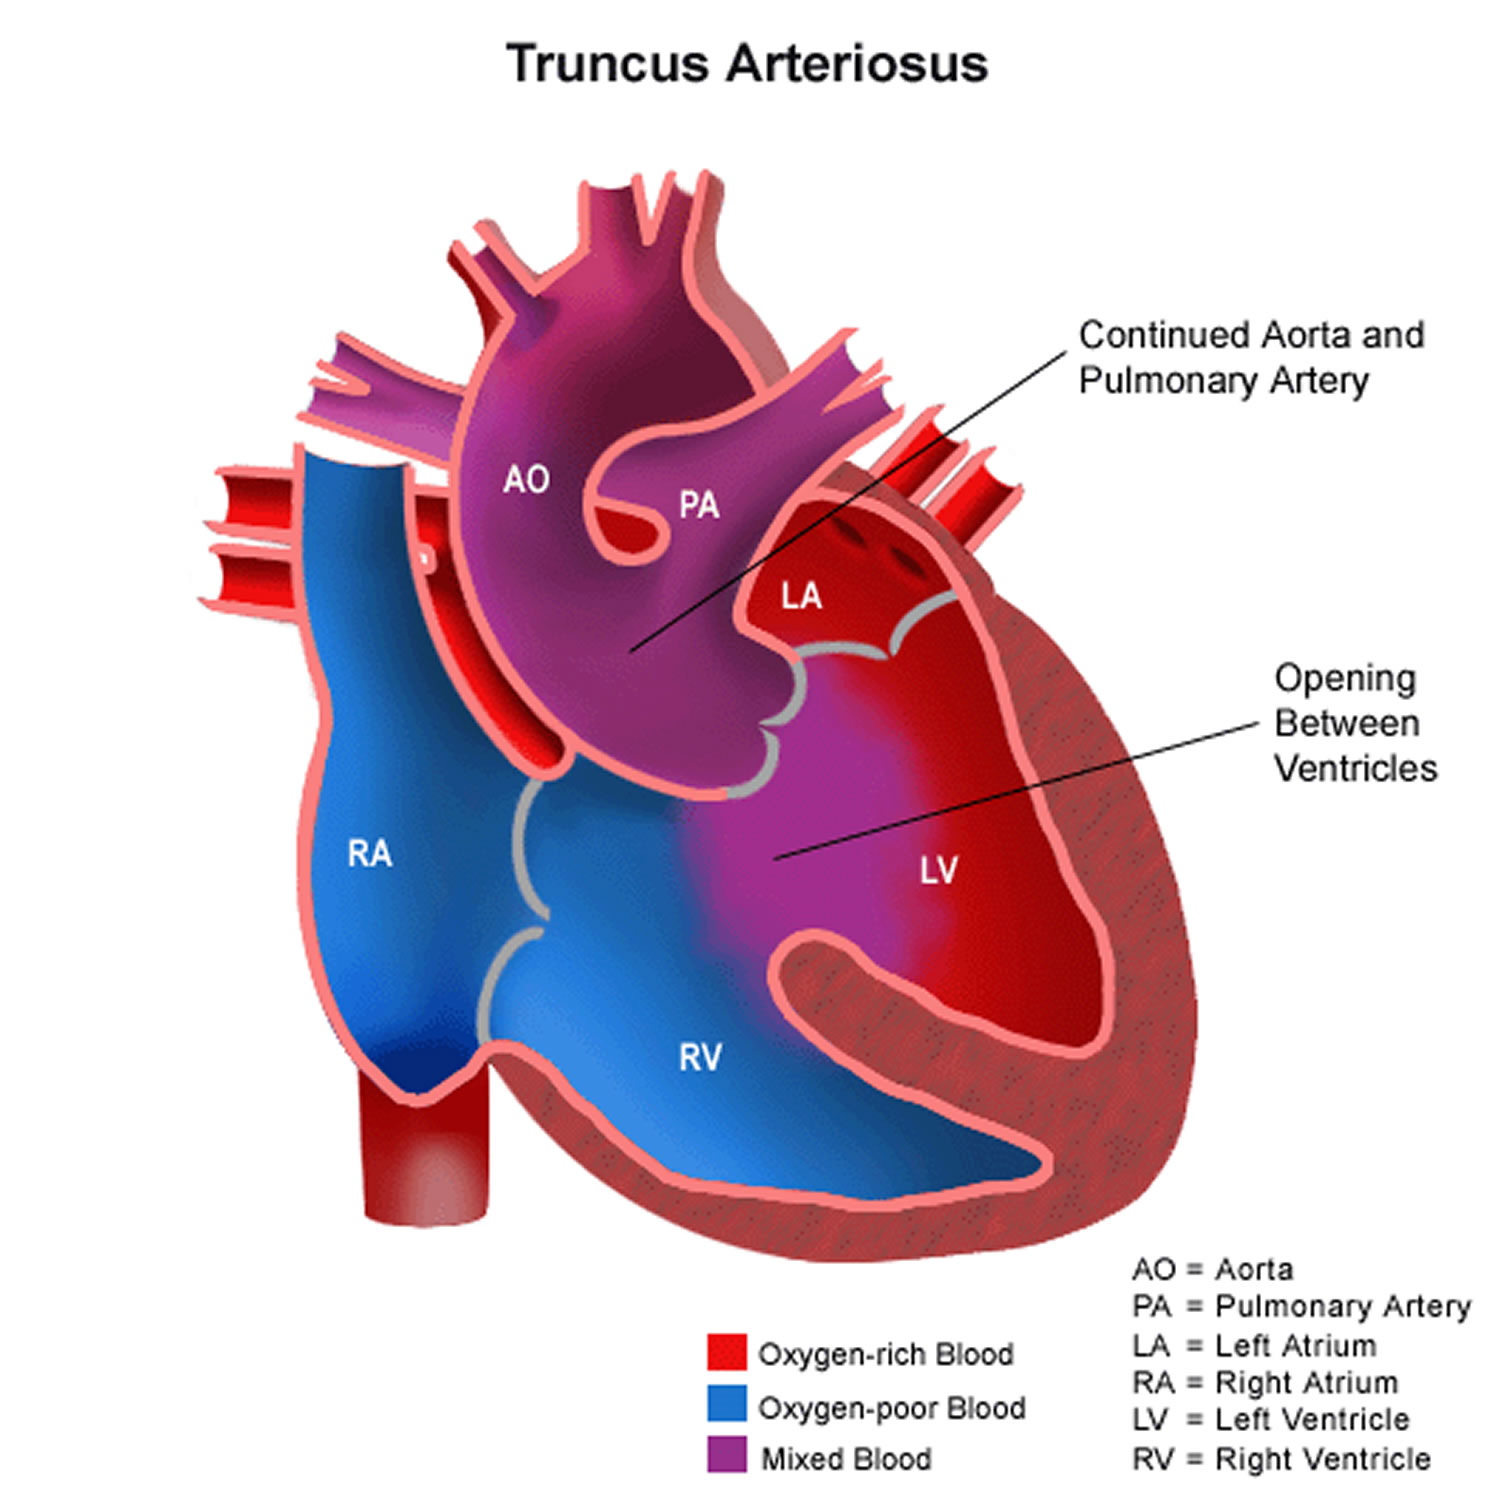 Truncus Arteriosus